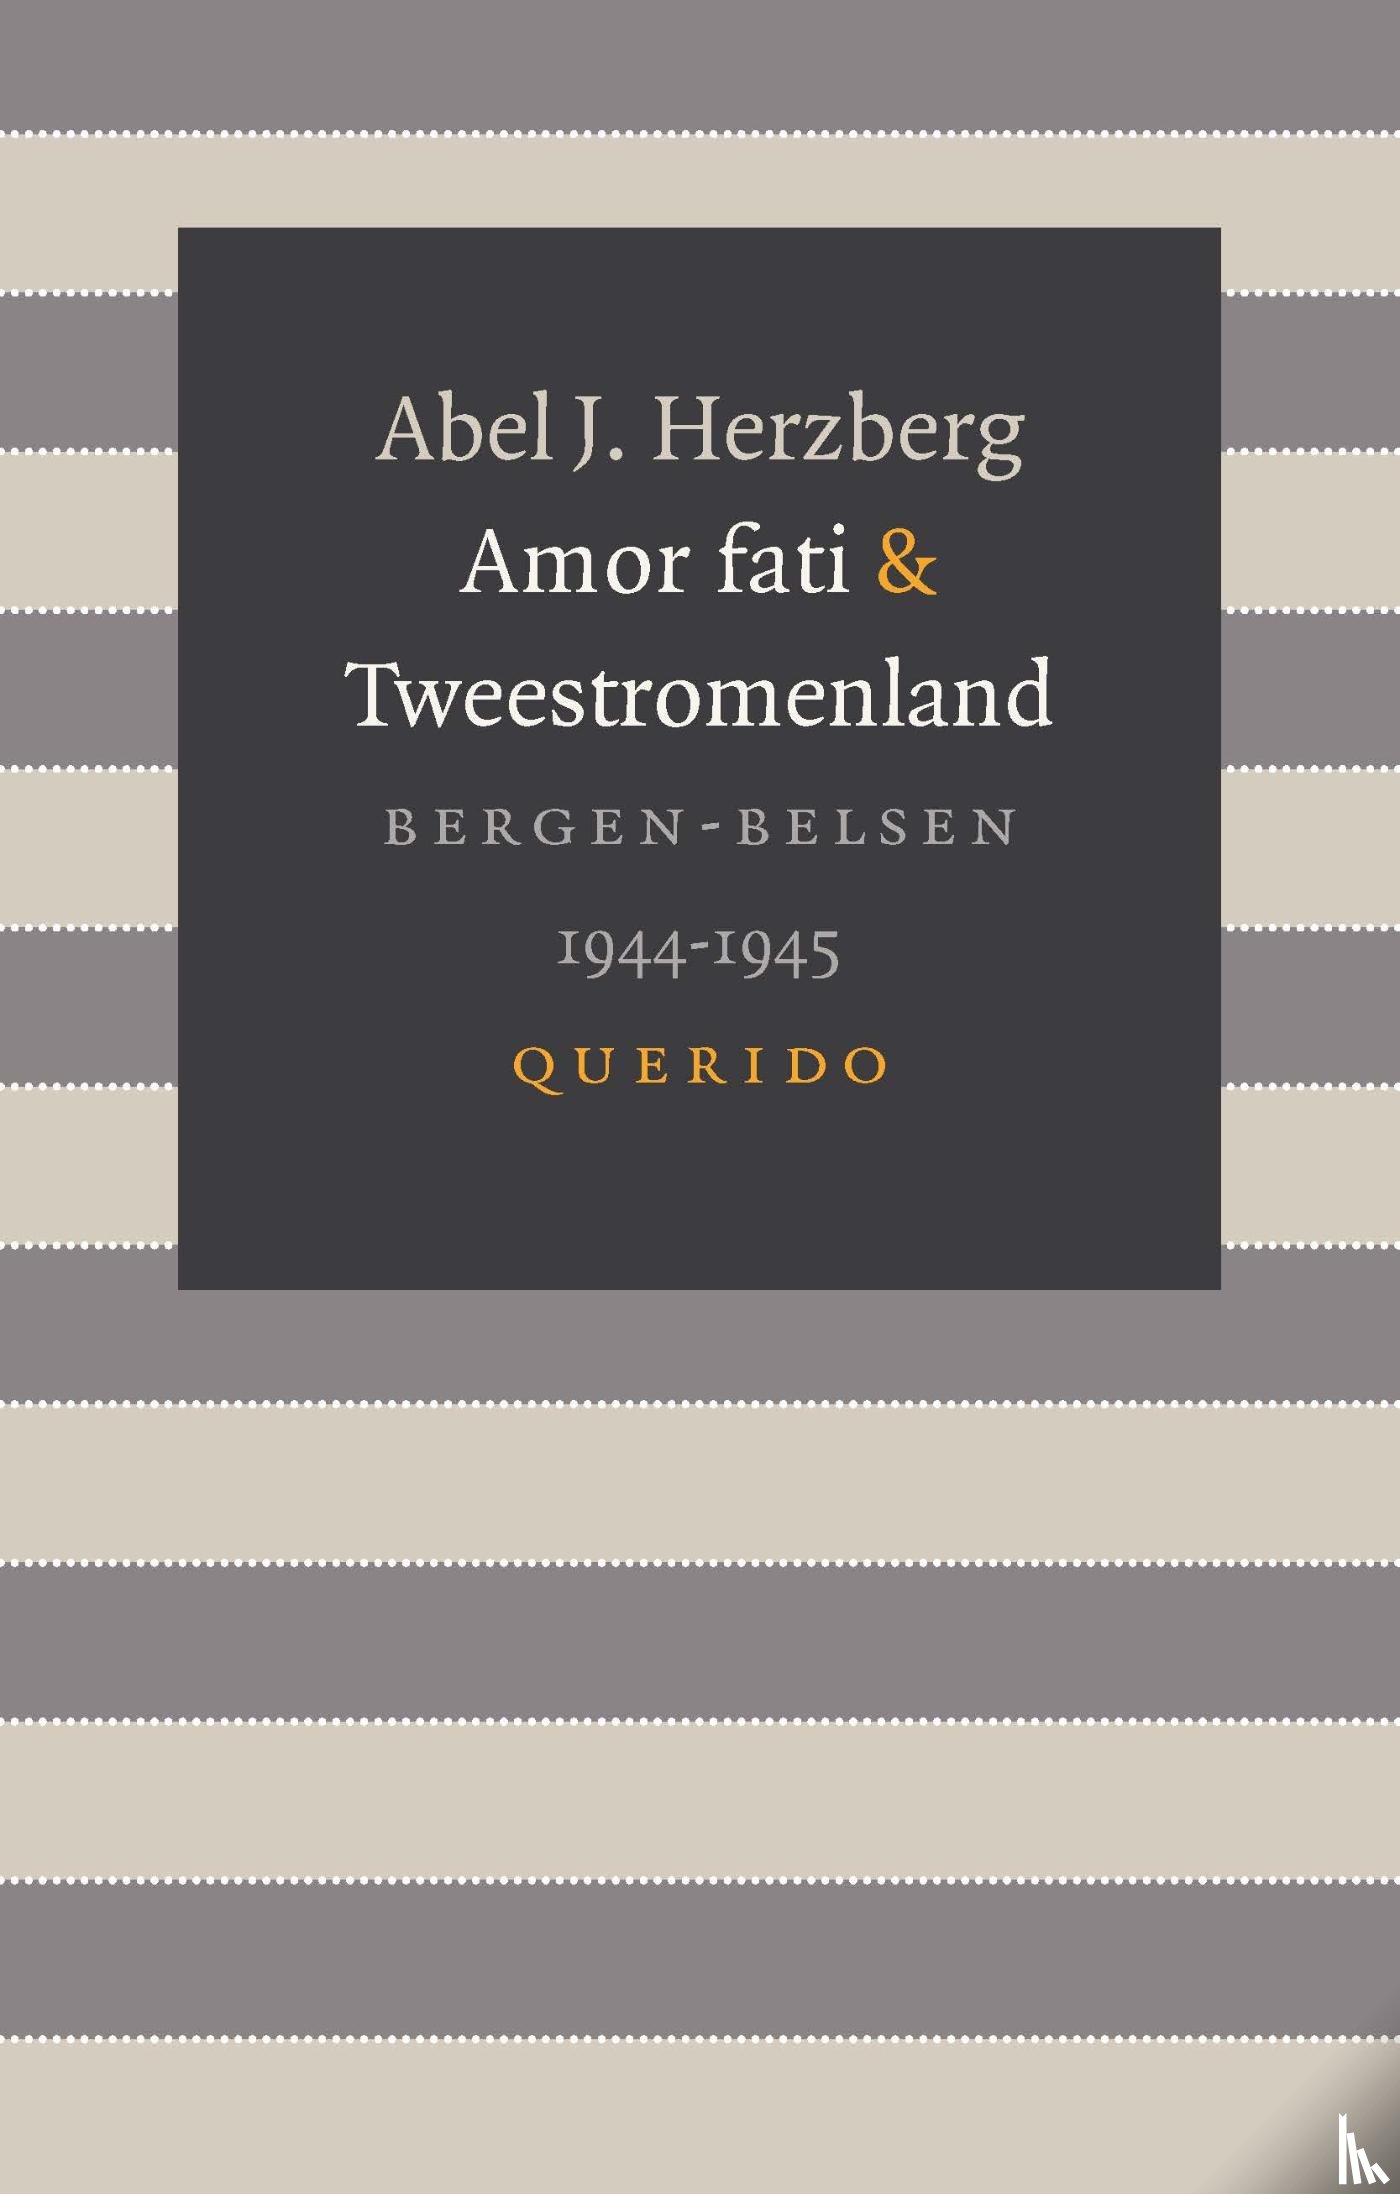 Herzberg, Abel J. - Amor fati & Tweestromenland - Bergen-Belsen 1944-1945